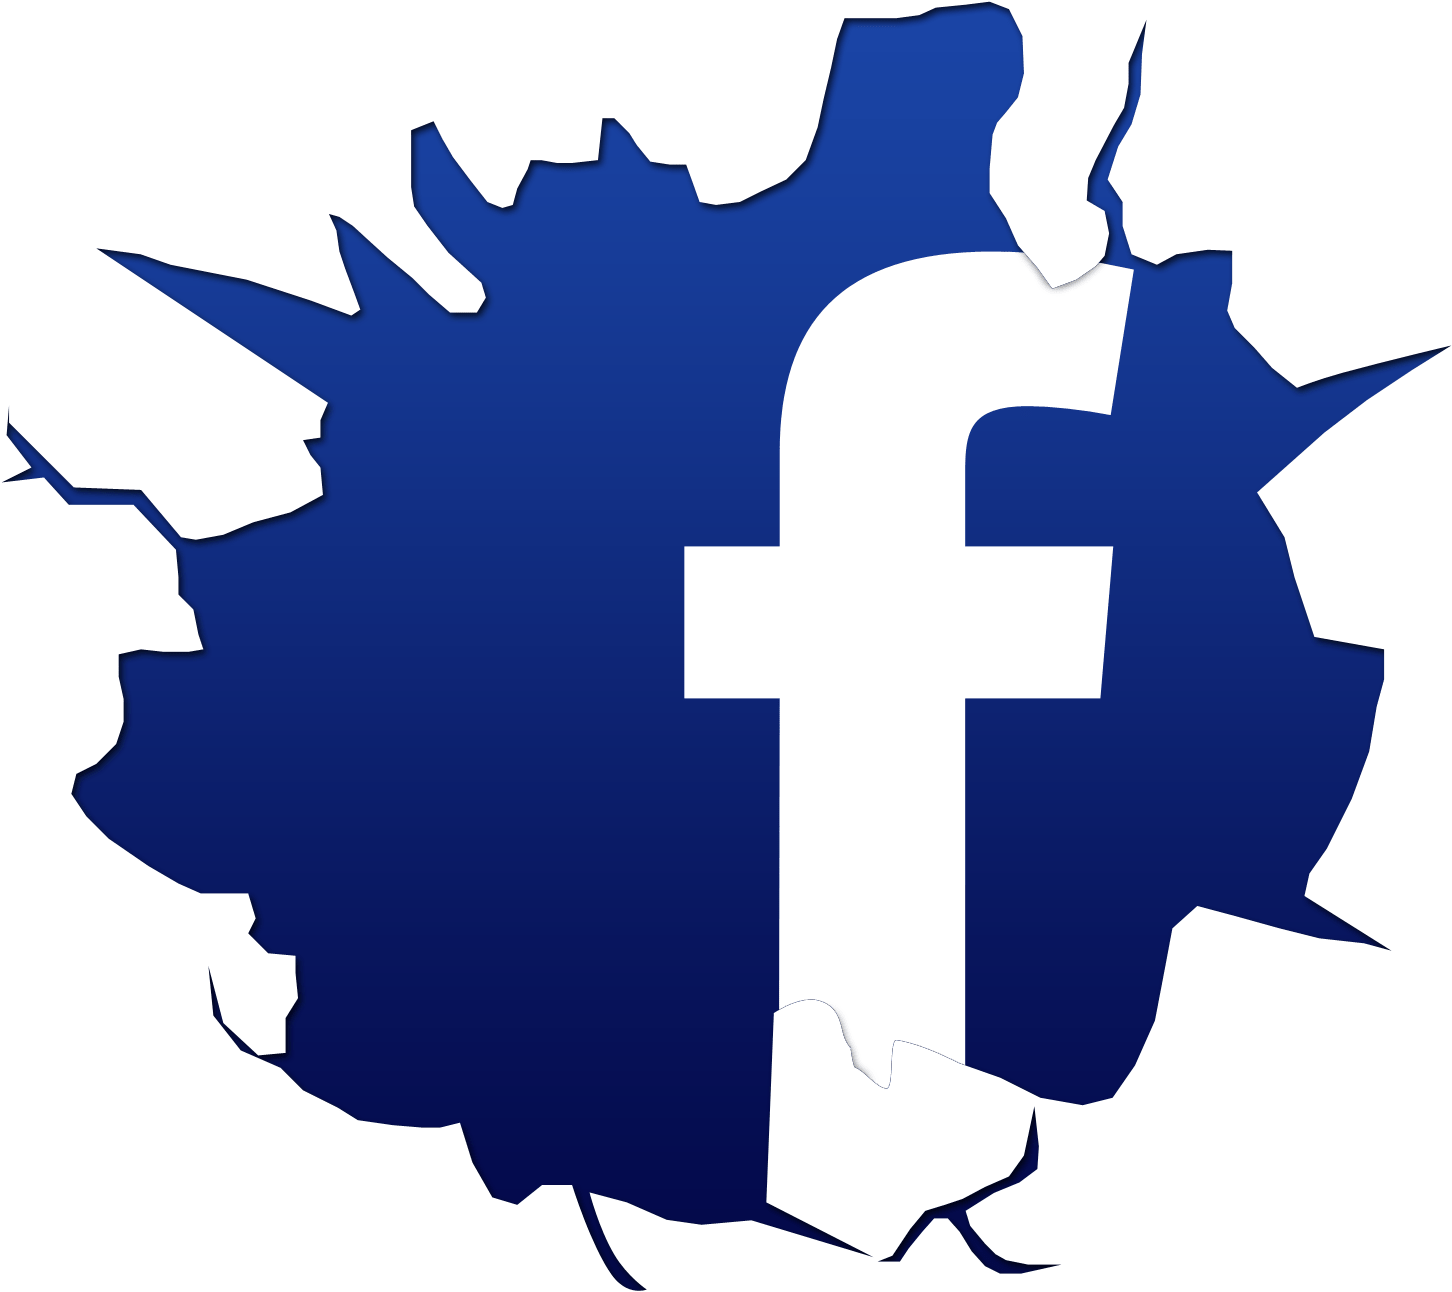 Logo Facebook Vector Clipart Free To Use Clip Art Resource - Facebook Logo Cracked (1500x1500)